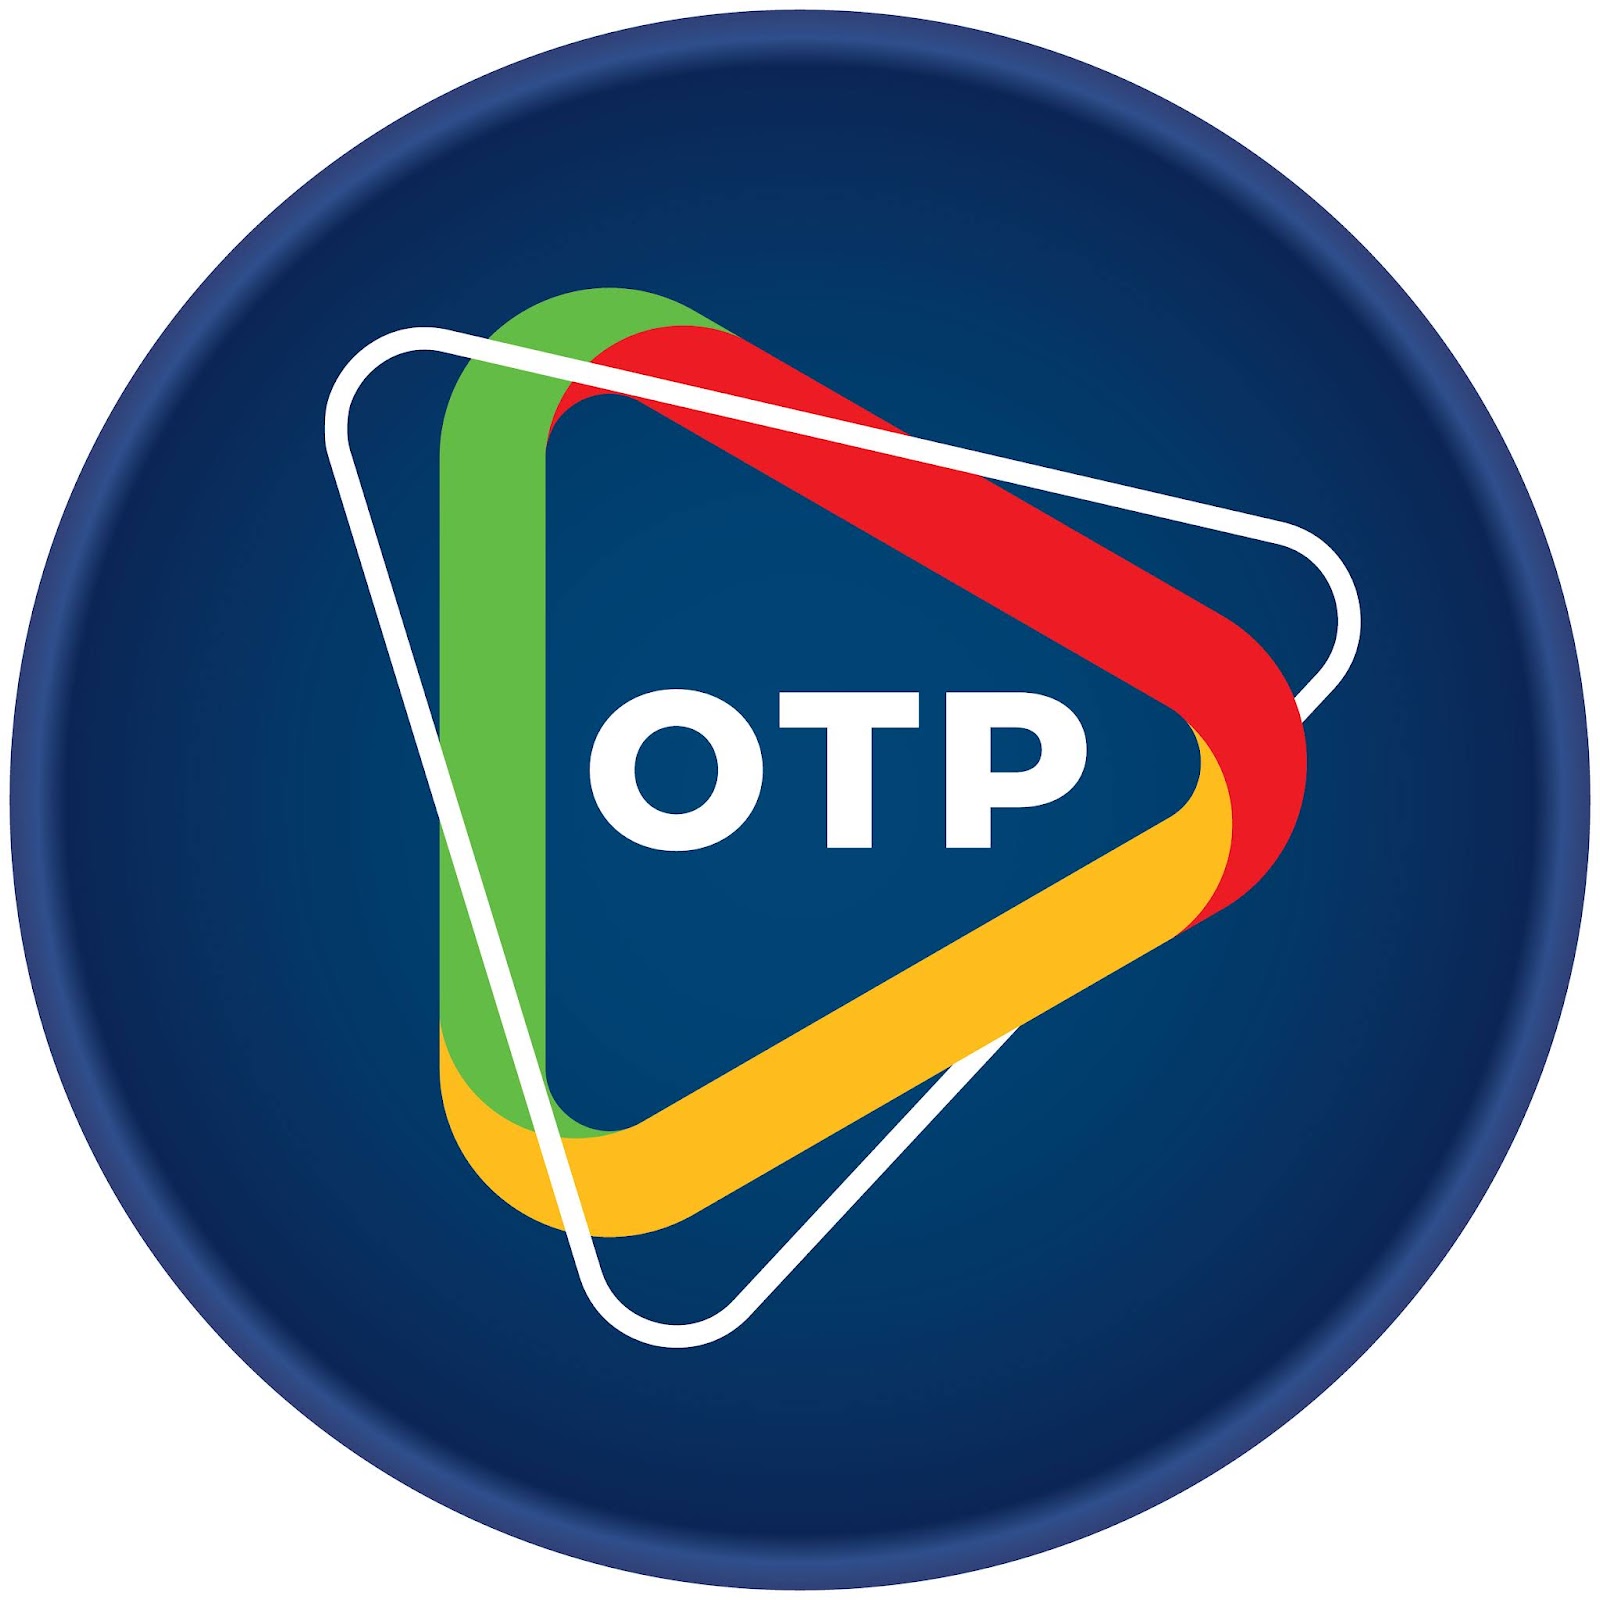 Open Tech Point - OTP